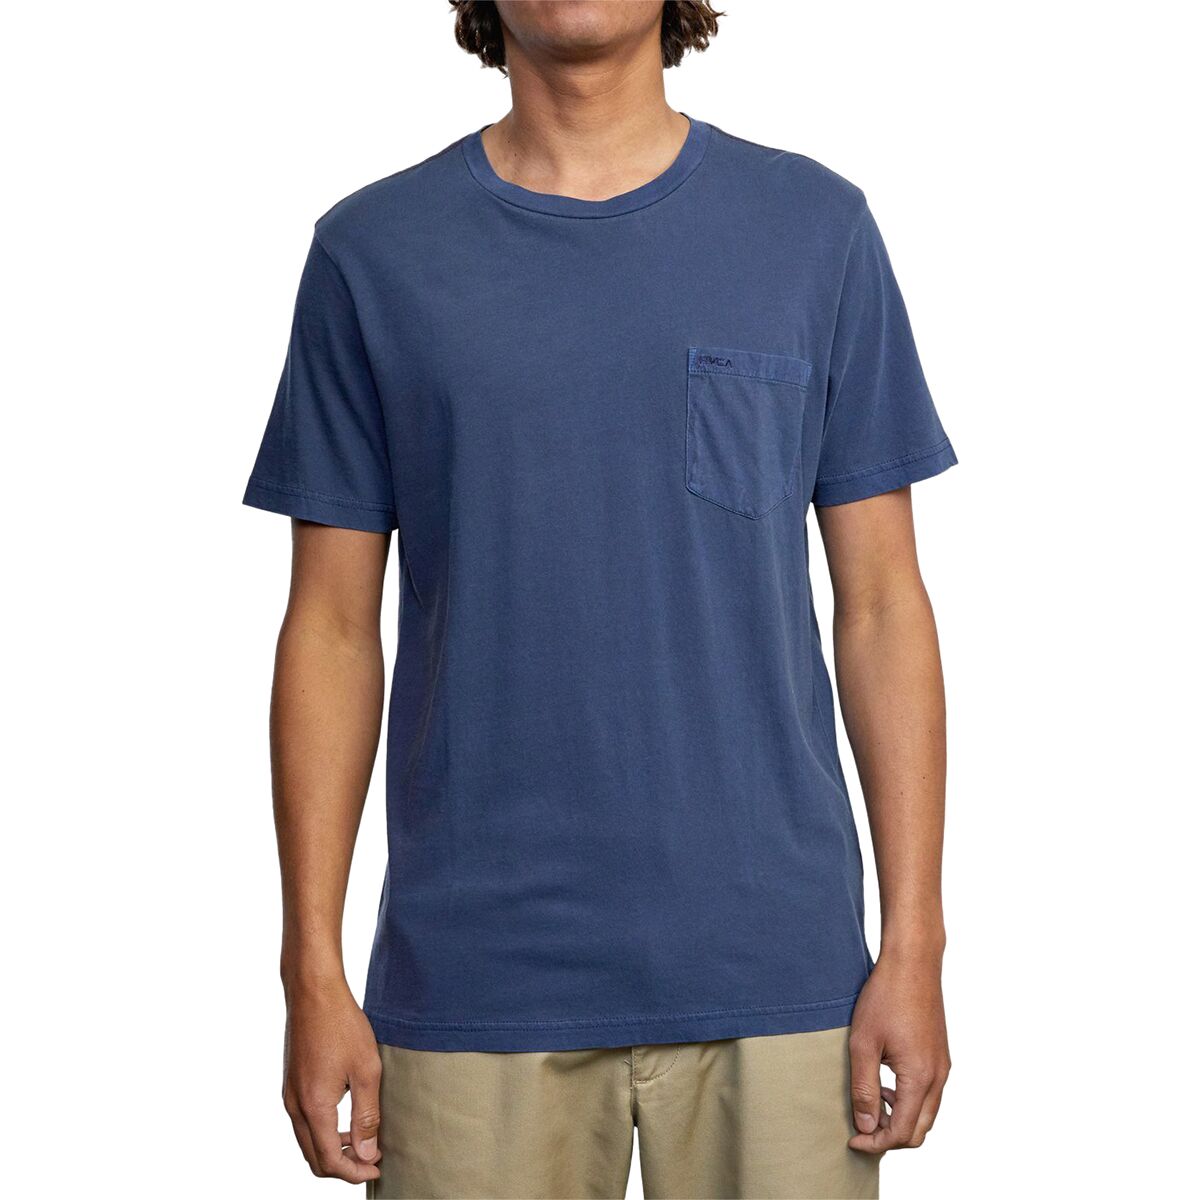 RVCA PTC 2 Pigment T-Shirt - Men's